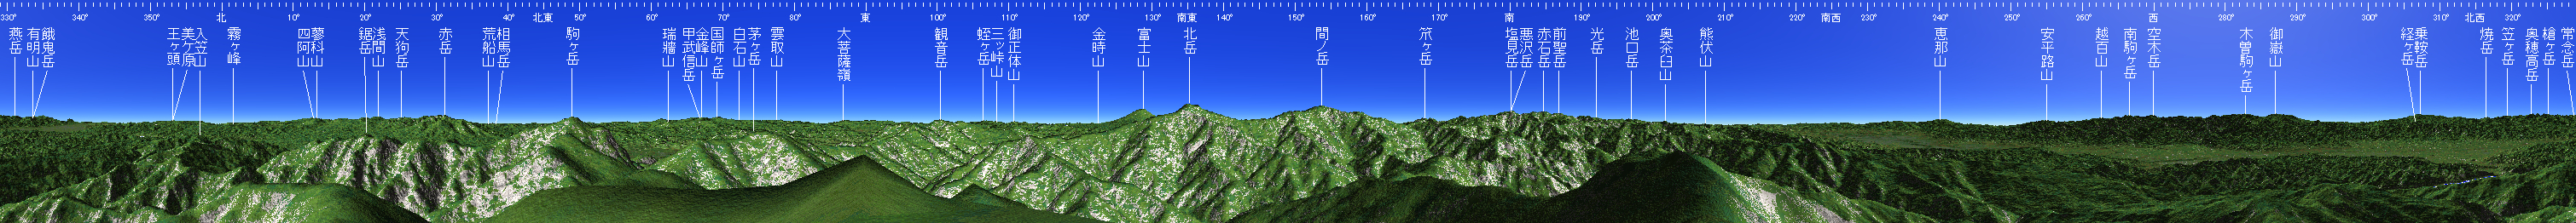 仙丈ヶ岳 山頂展望図